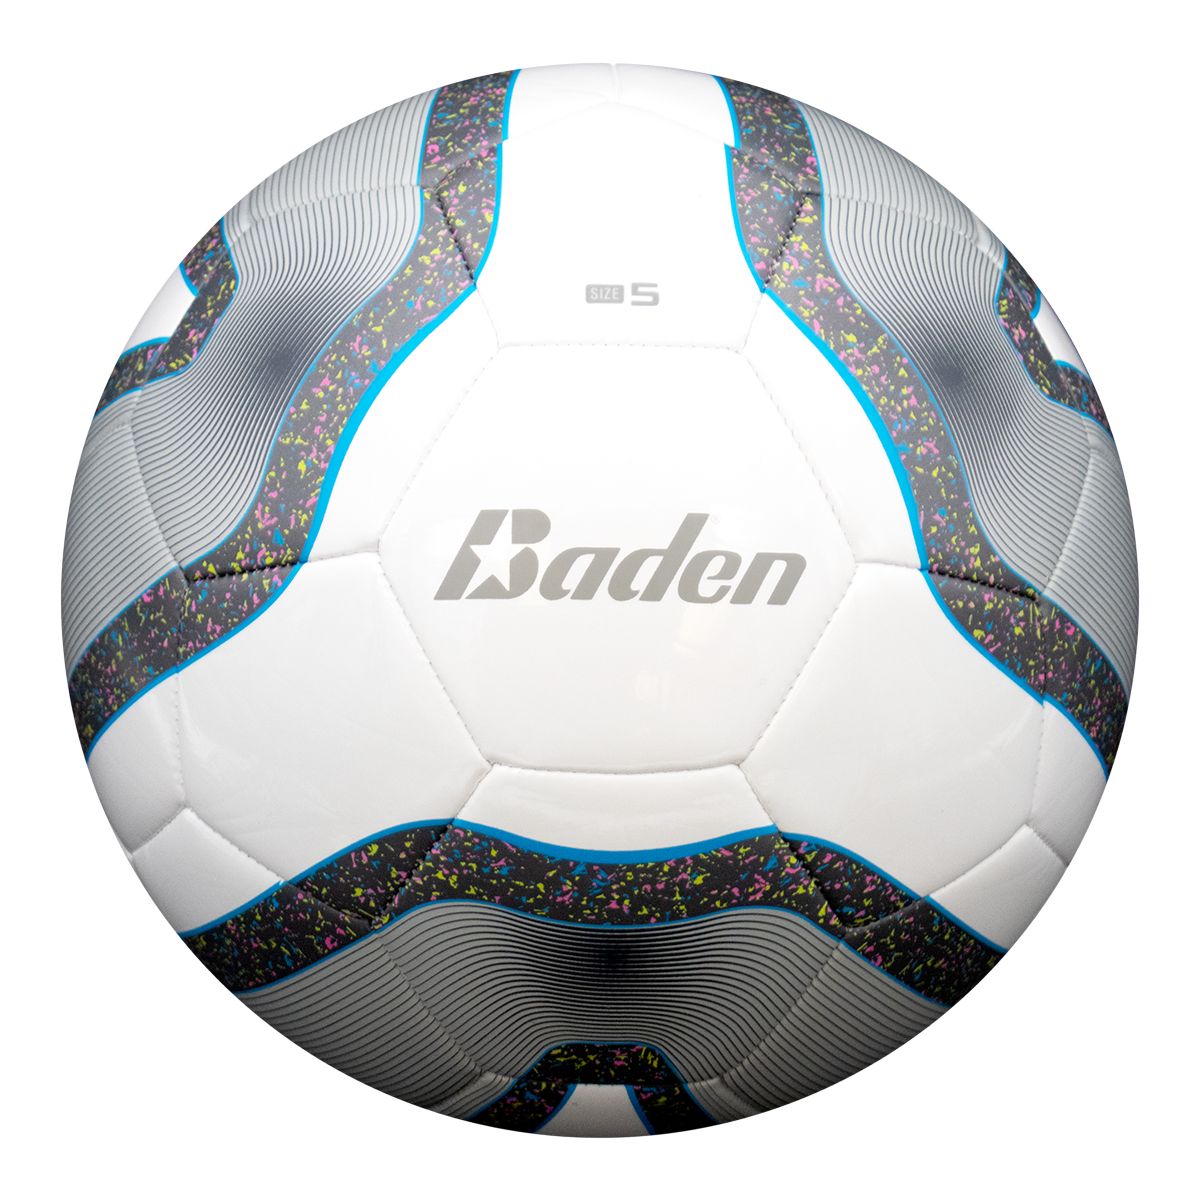 Image of Baden Team Senior Soccer Ball - Size 4